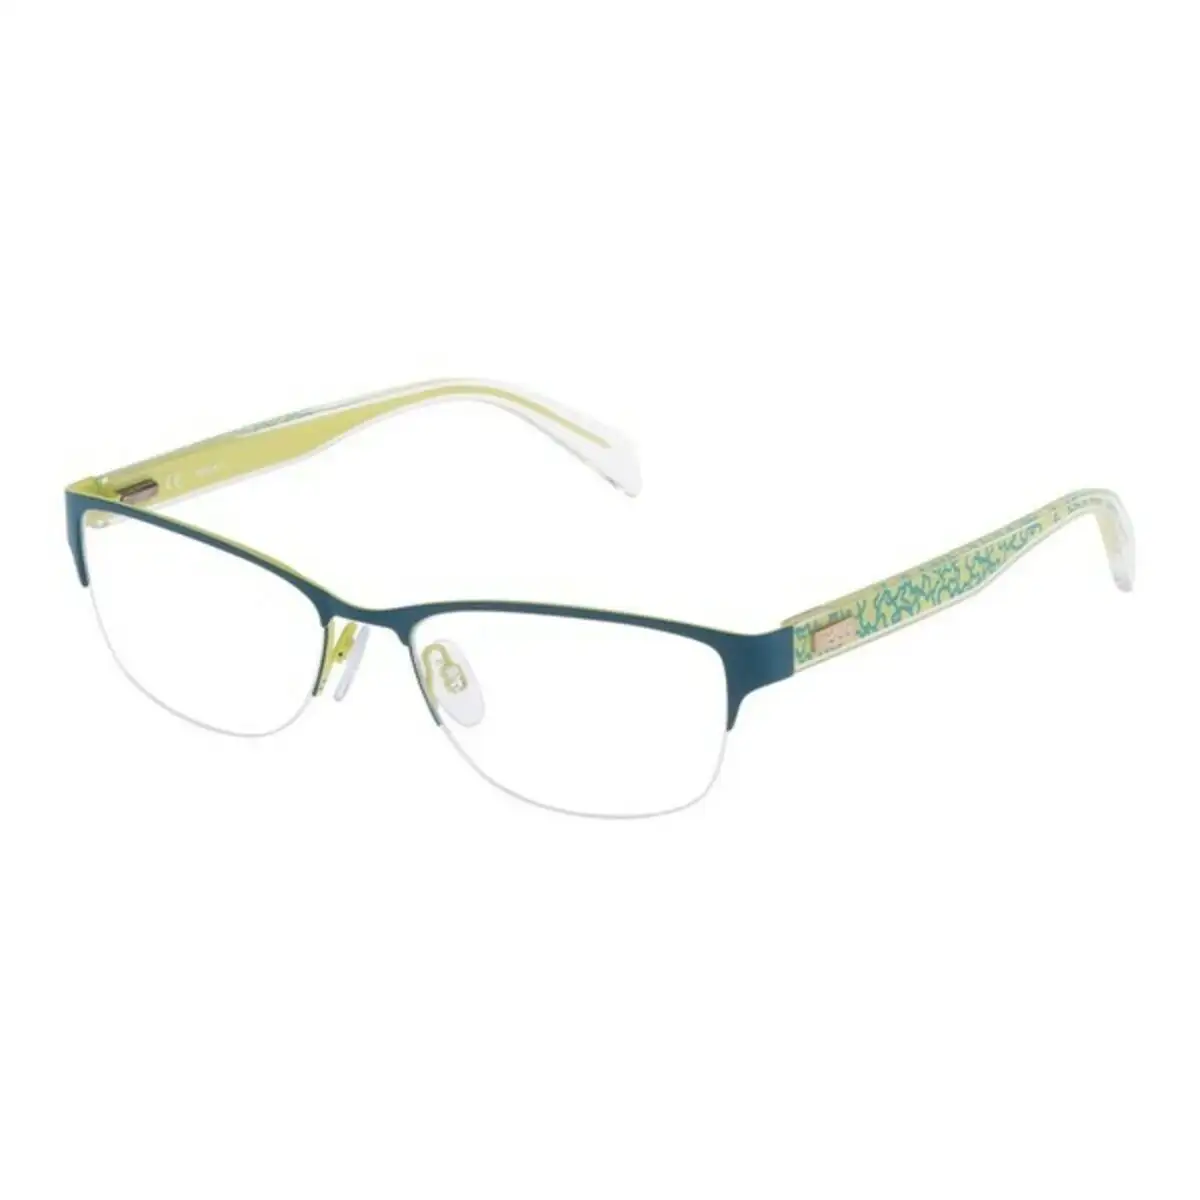 Monture de lunettes femme tous vto320540455 54 mm bleu o 54 mm _4165. DIAYTAR SENEGAL - L'Art de Vivre en Couleurs. Découvrez notre boutique en ligne et trouvez des produits qui ajoutent une palette vibrante à votre quotidien.